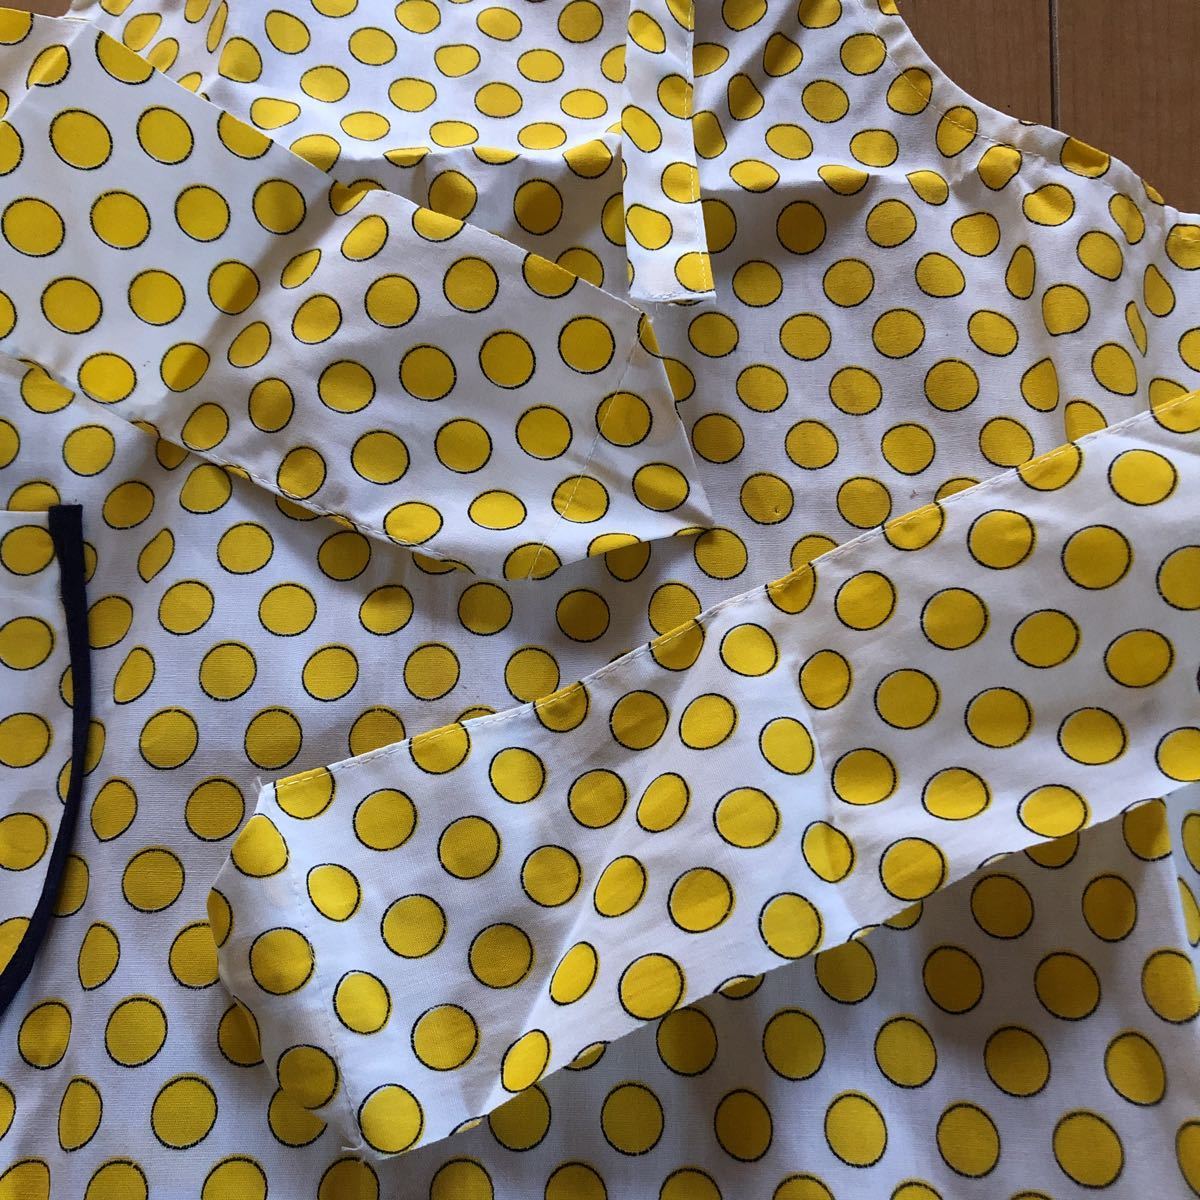  новый товар детский фартук новый товар желтый цвет полька-дот белый девочка retro ученик начальной школы 